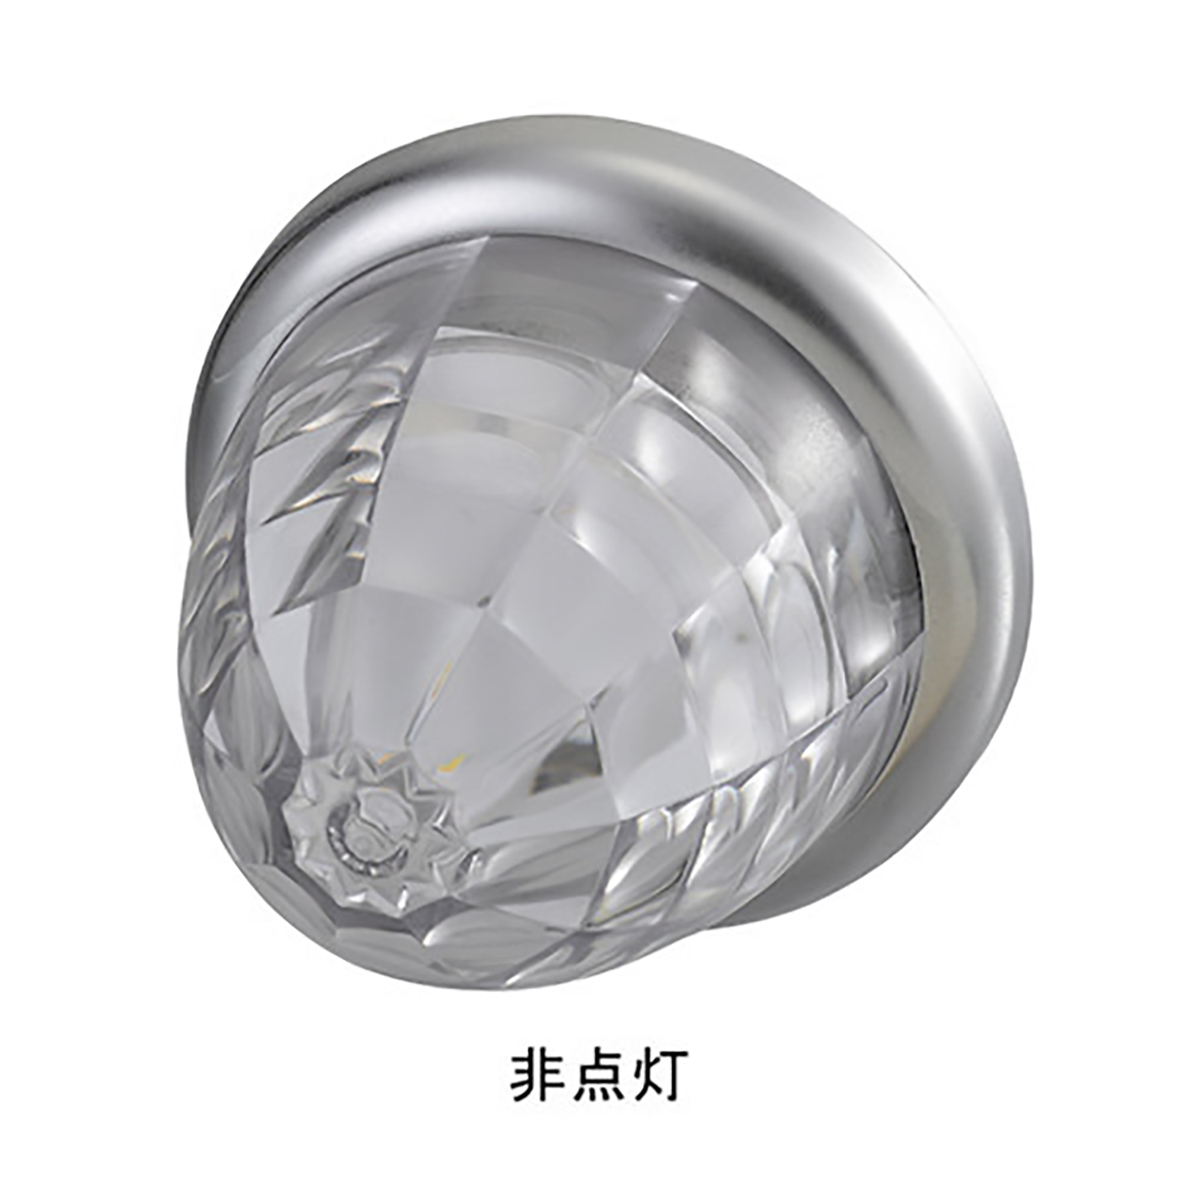 マーカー ランプ SMD LED プラスチックレンズ グリーン DC12/DC24V 防水